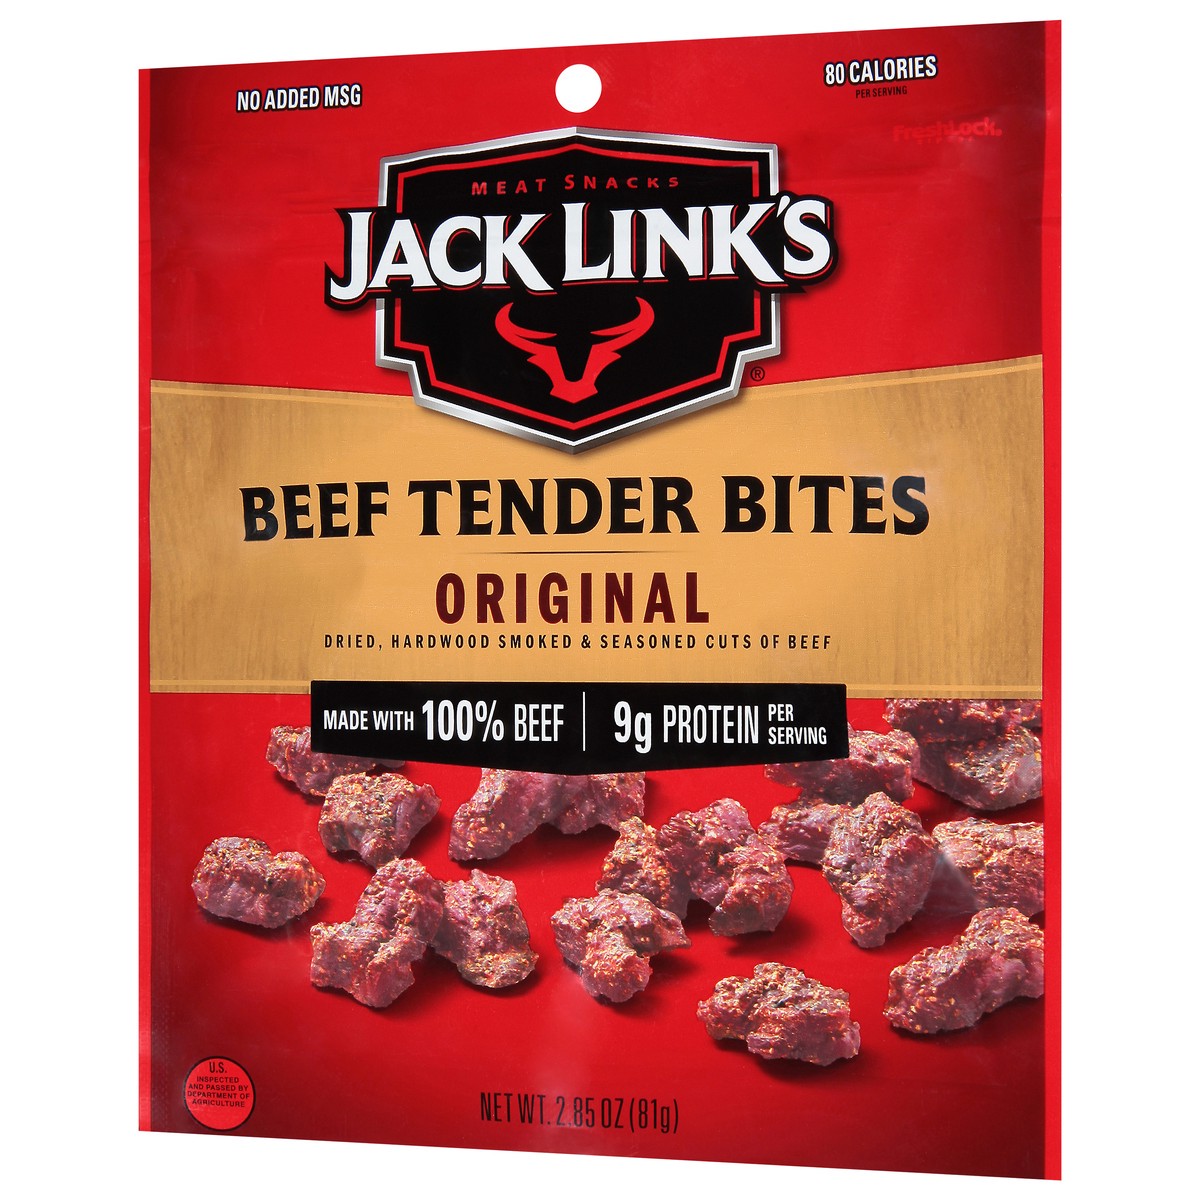 slide 3 of 9, Jack Link's Jack Links Meat Snacks Tender Bites Original Beef Steak - 2.85 Oz, 2.85 oz